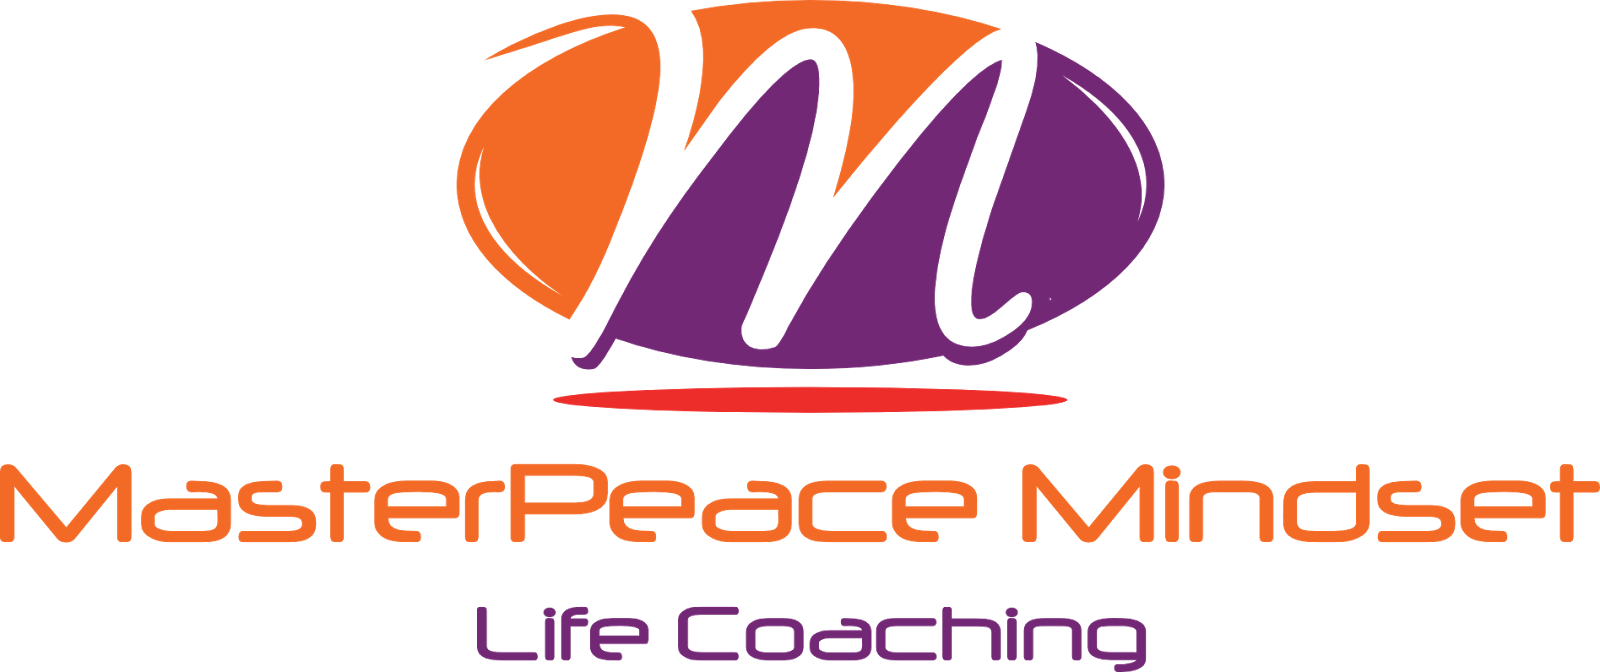 MasterPeace Mindset Life Coaching